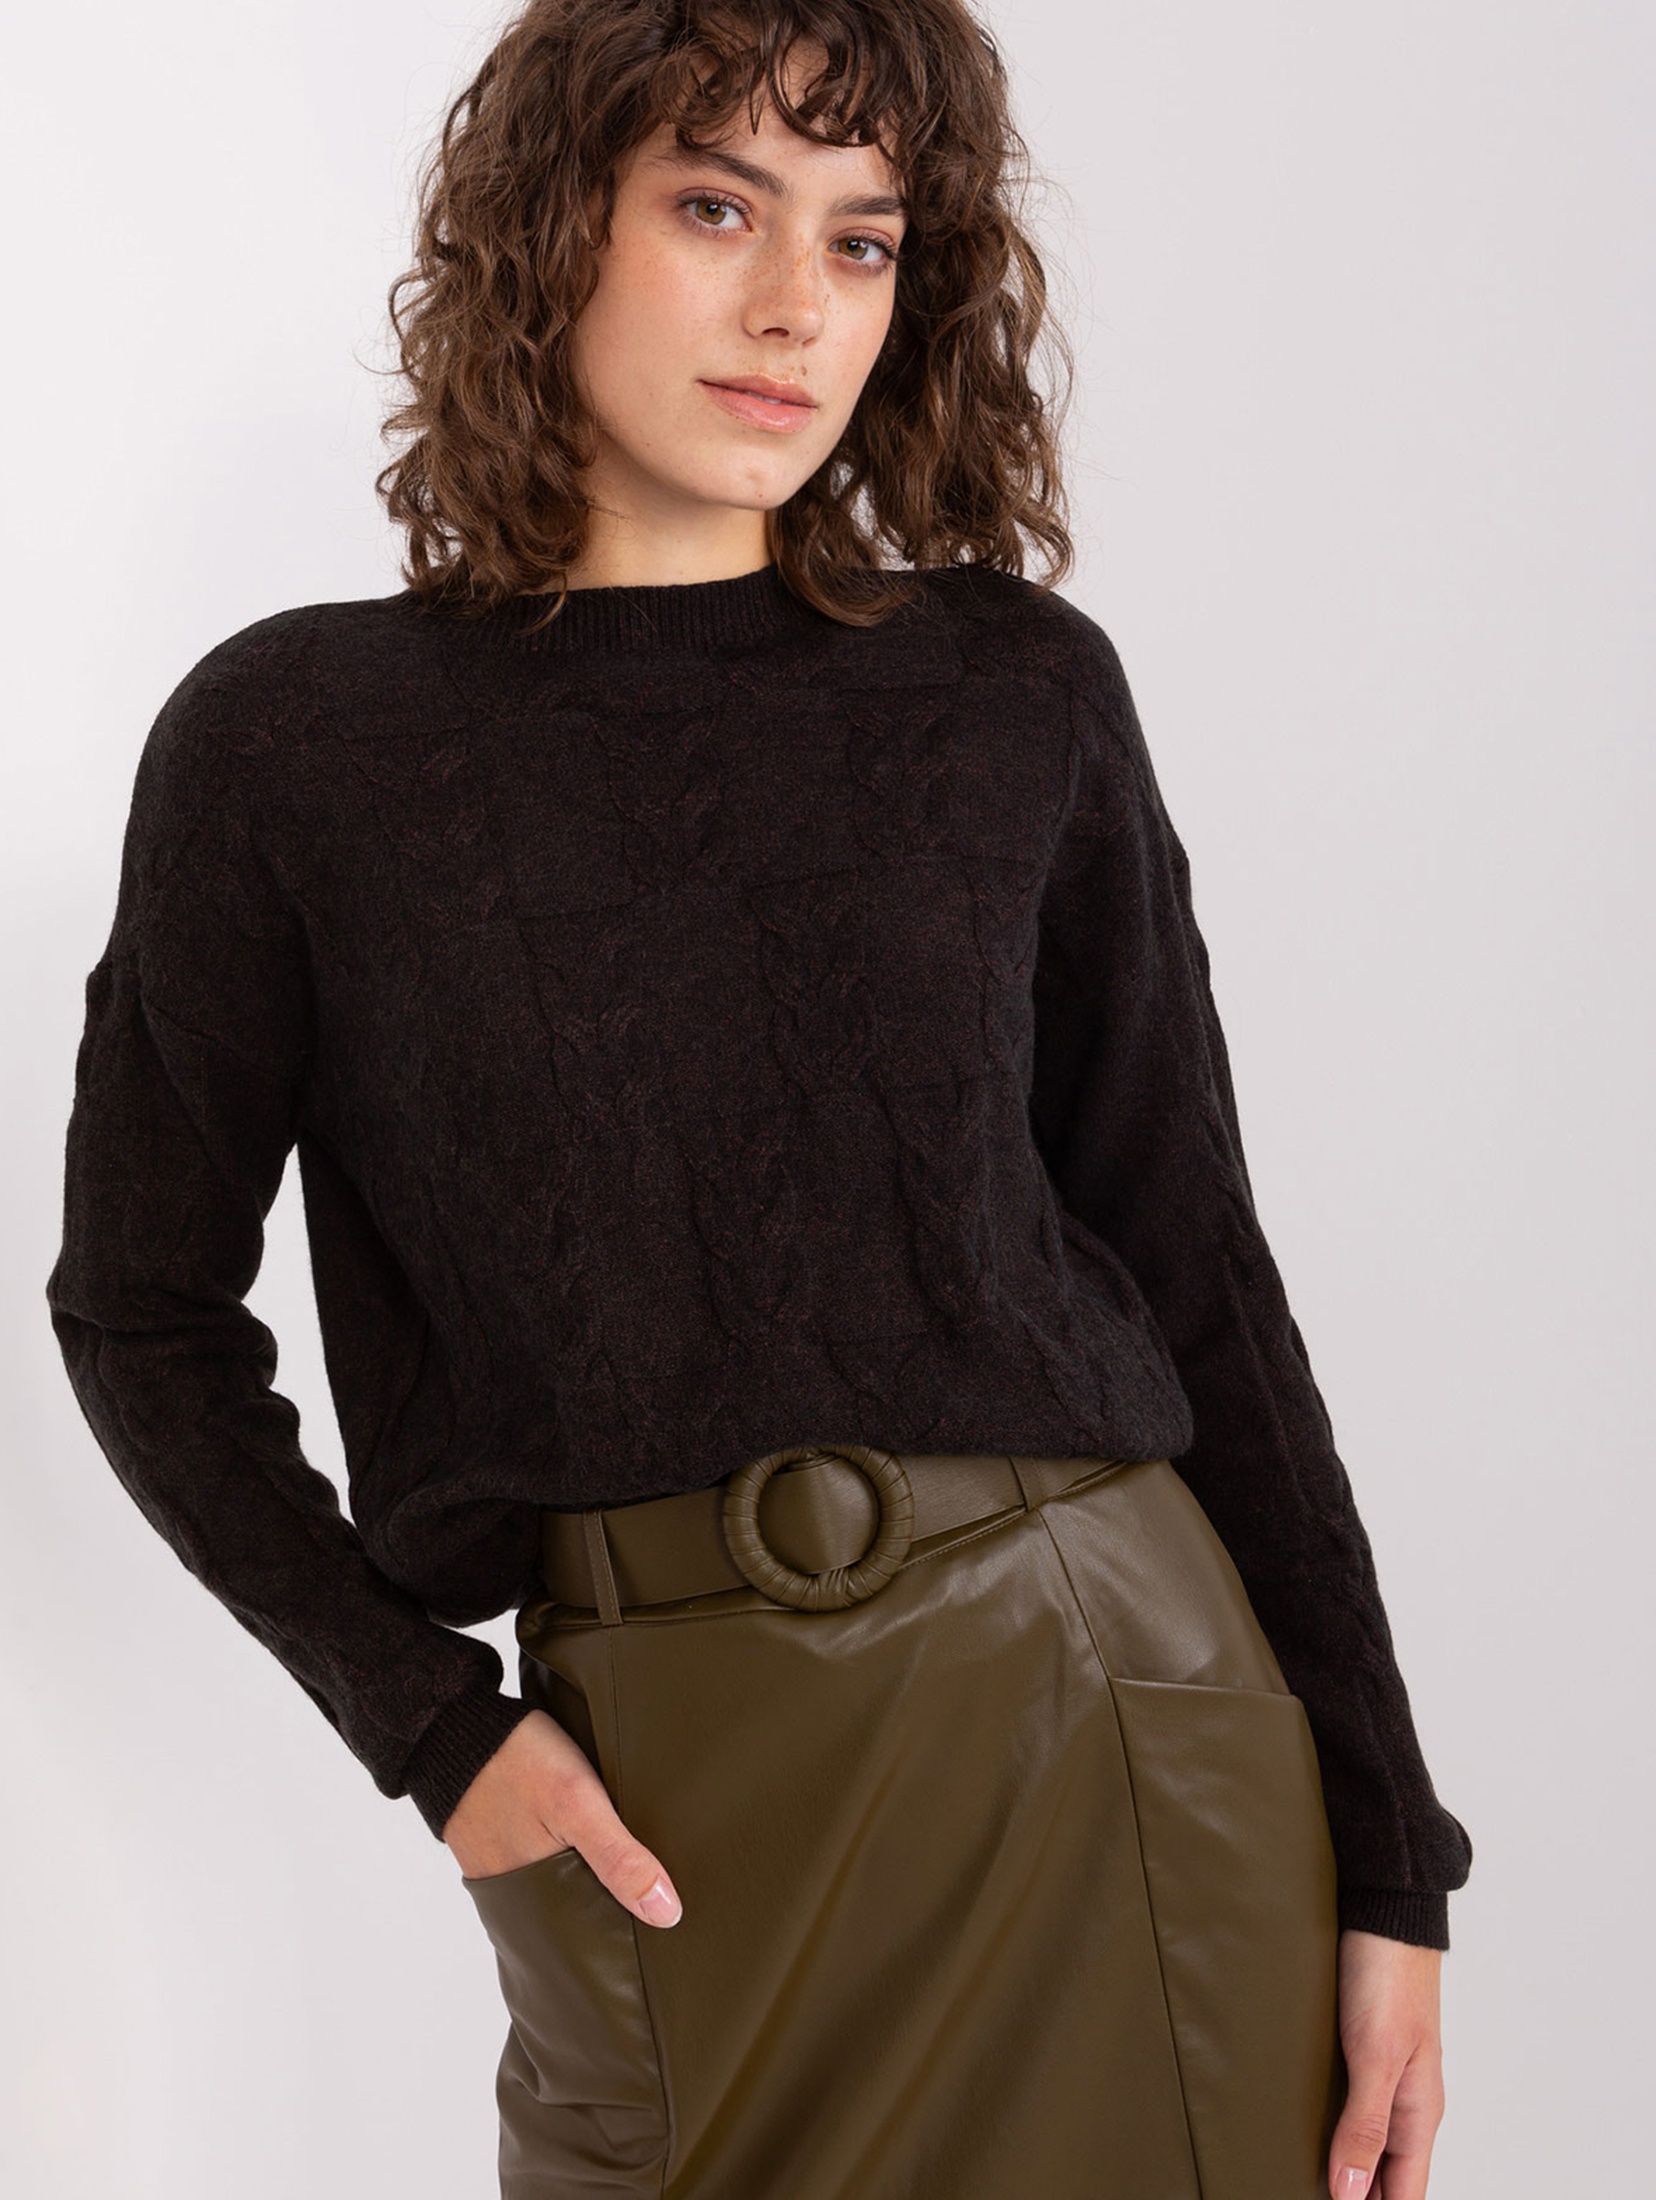 Czarny damski sweter w warkocze z długim rękawem